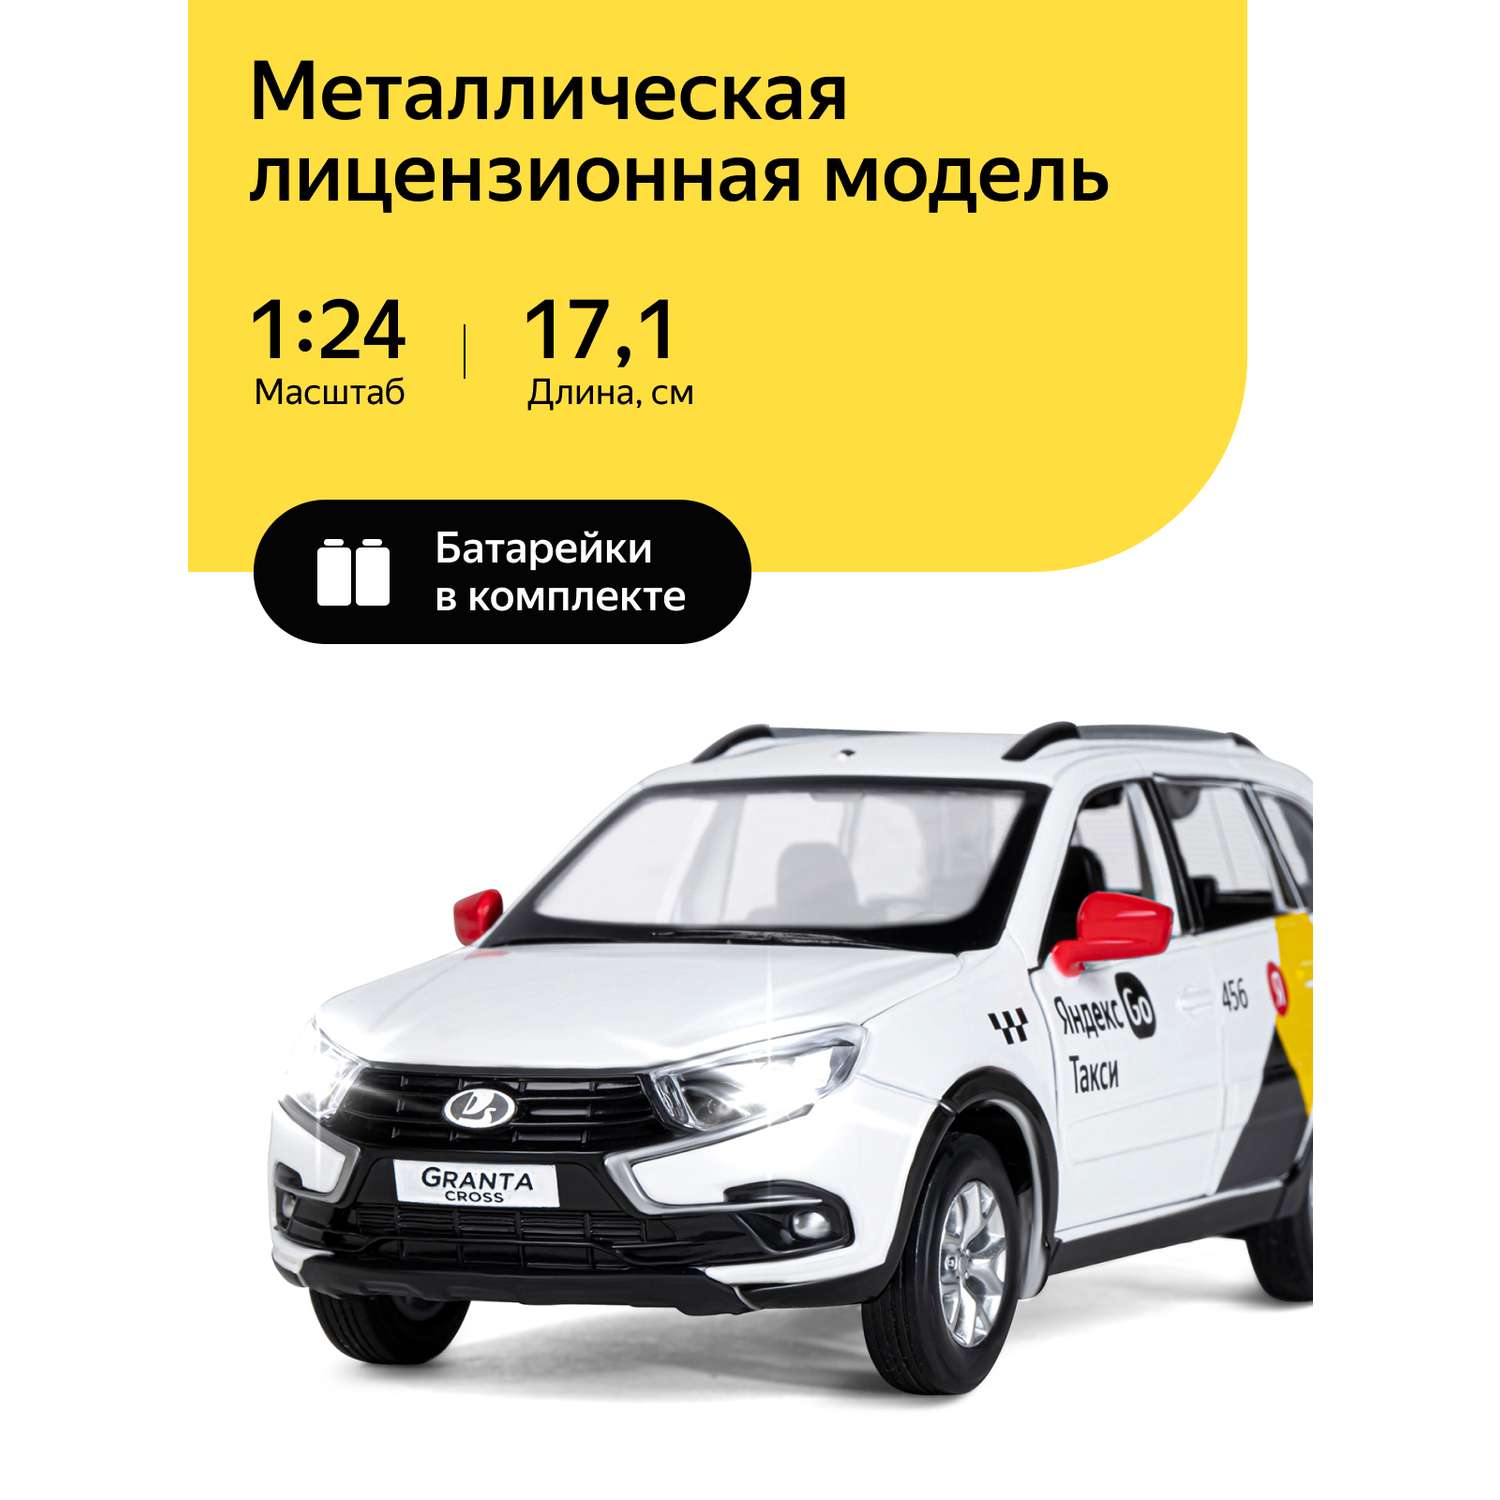 Машинка металлическая Яндекс GO игрушка детская 1:24 Lada Granta Cross белый инерционная JB1251346/Яндекс GO - фото 1